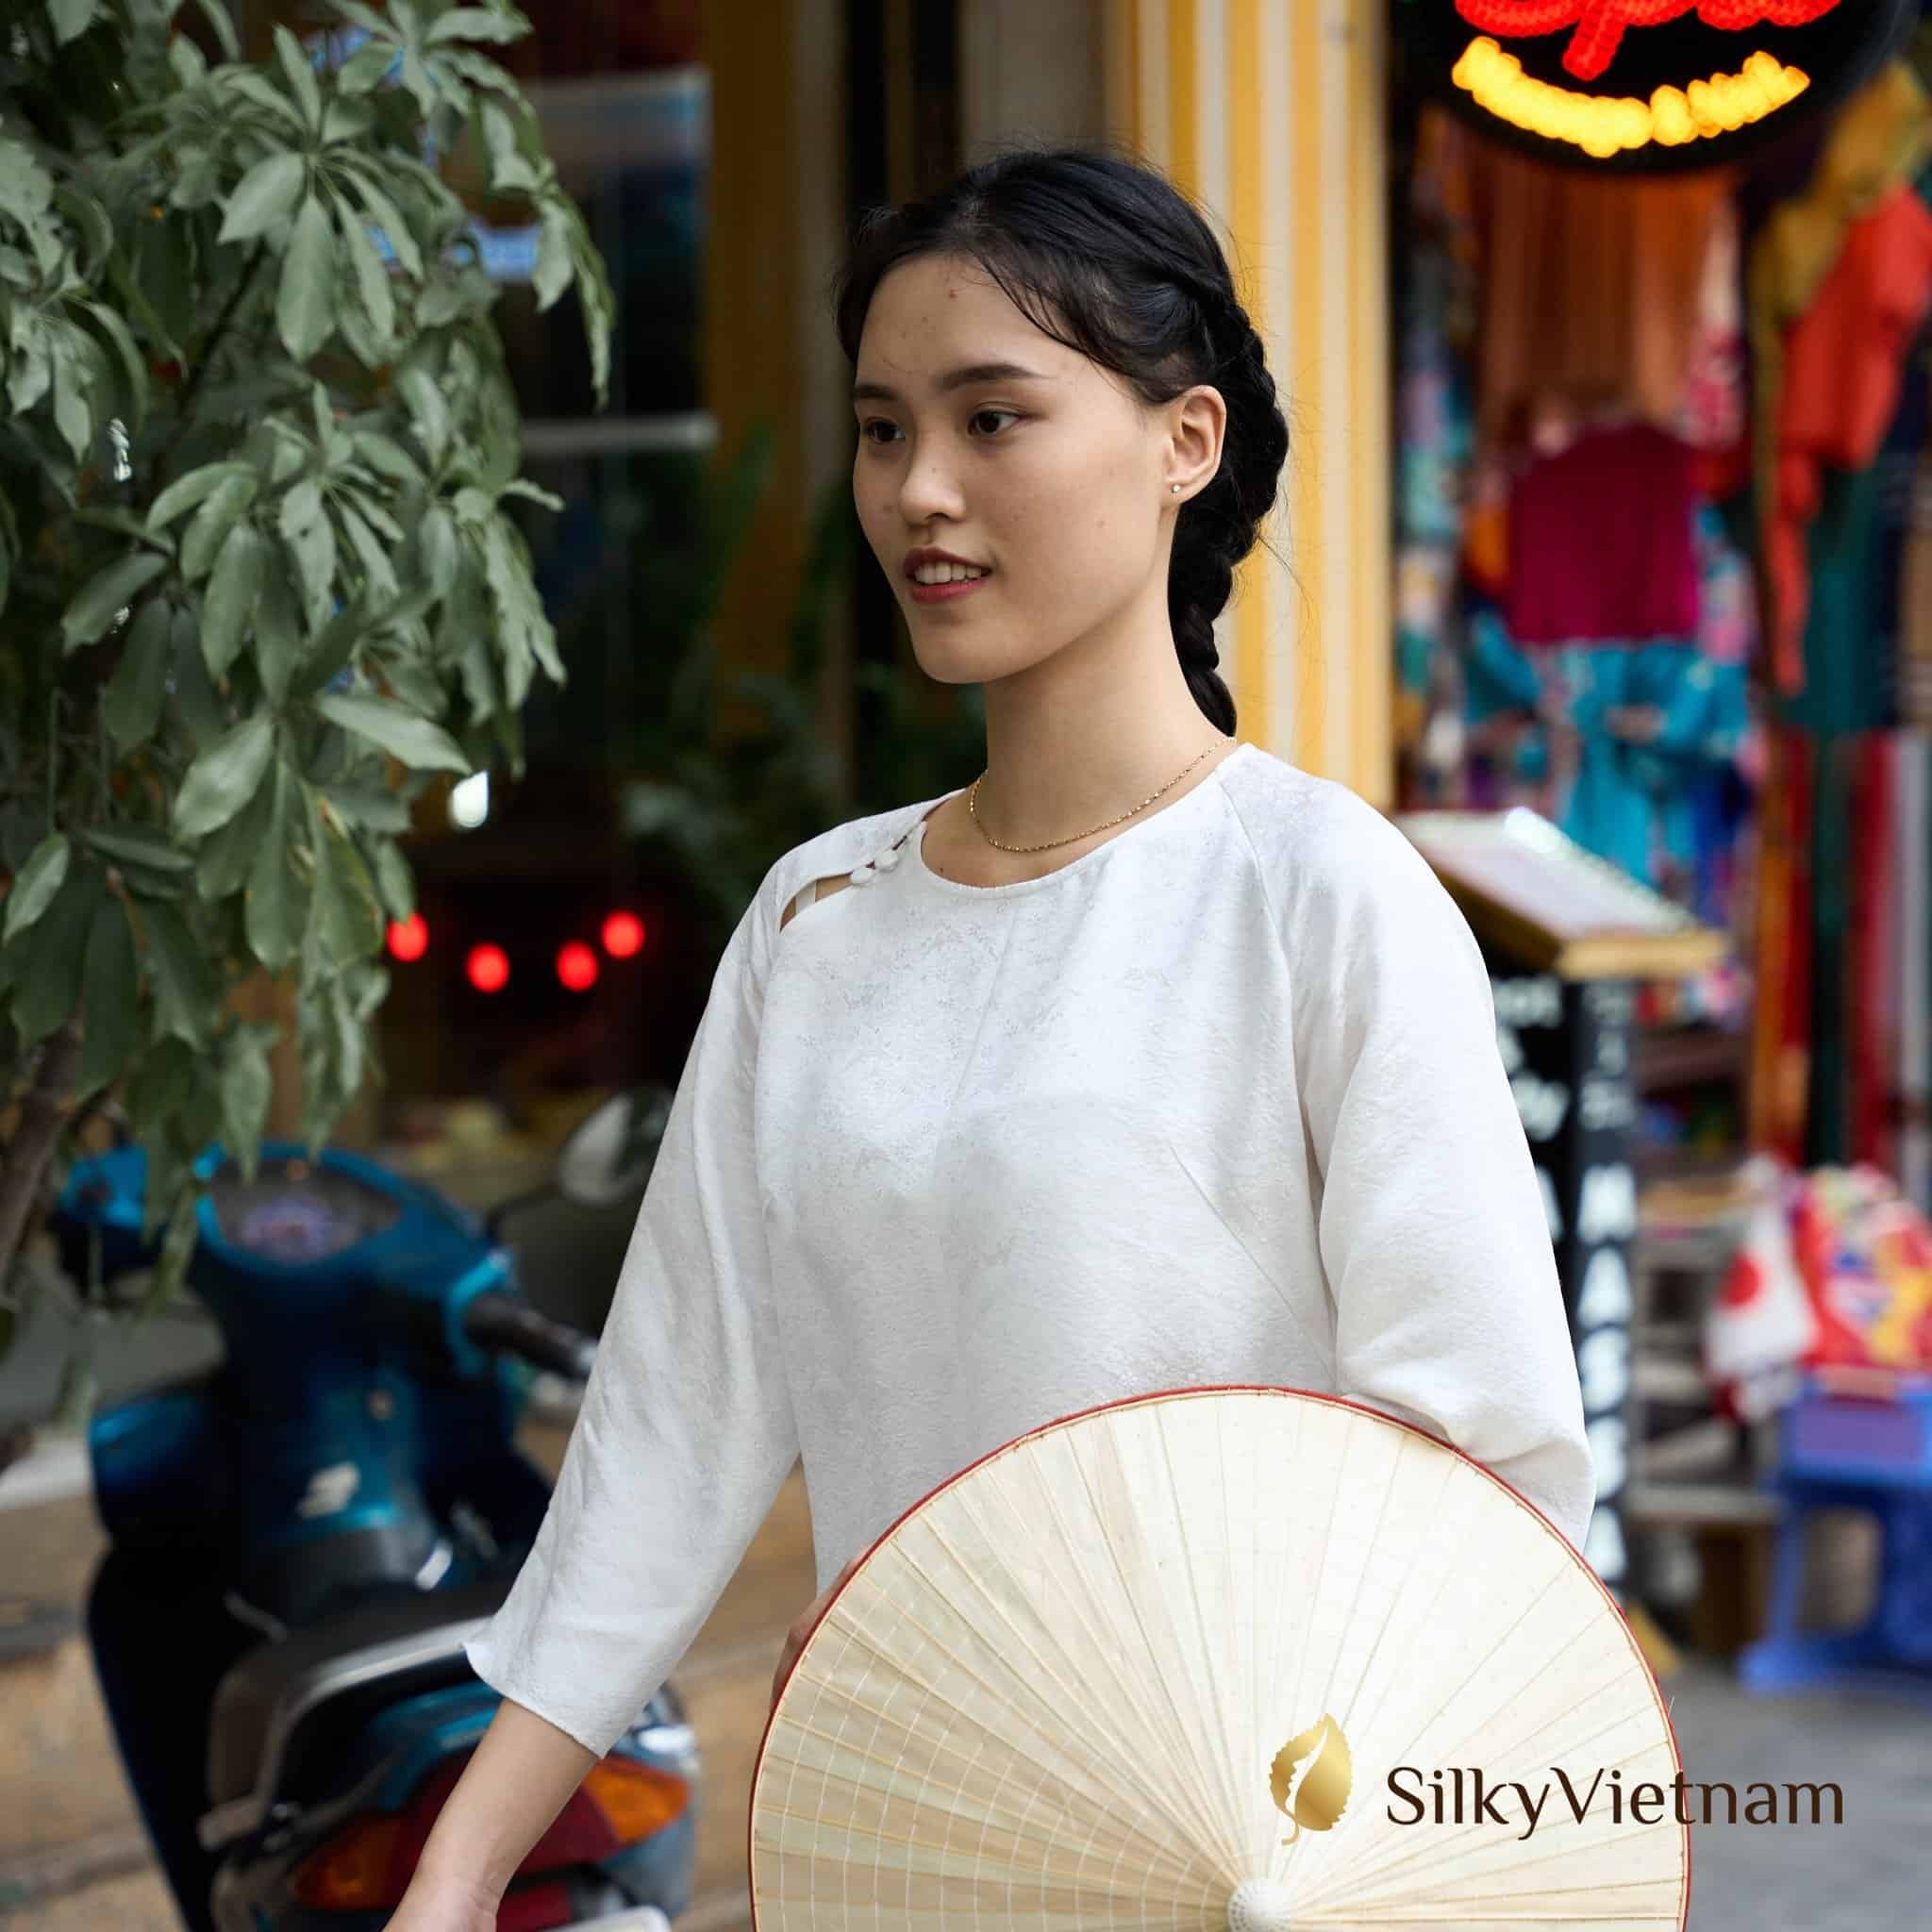 Hình ảnh nón lá cùng người con gái Việt